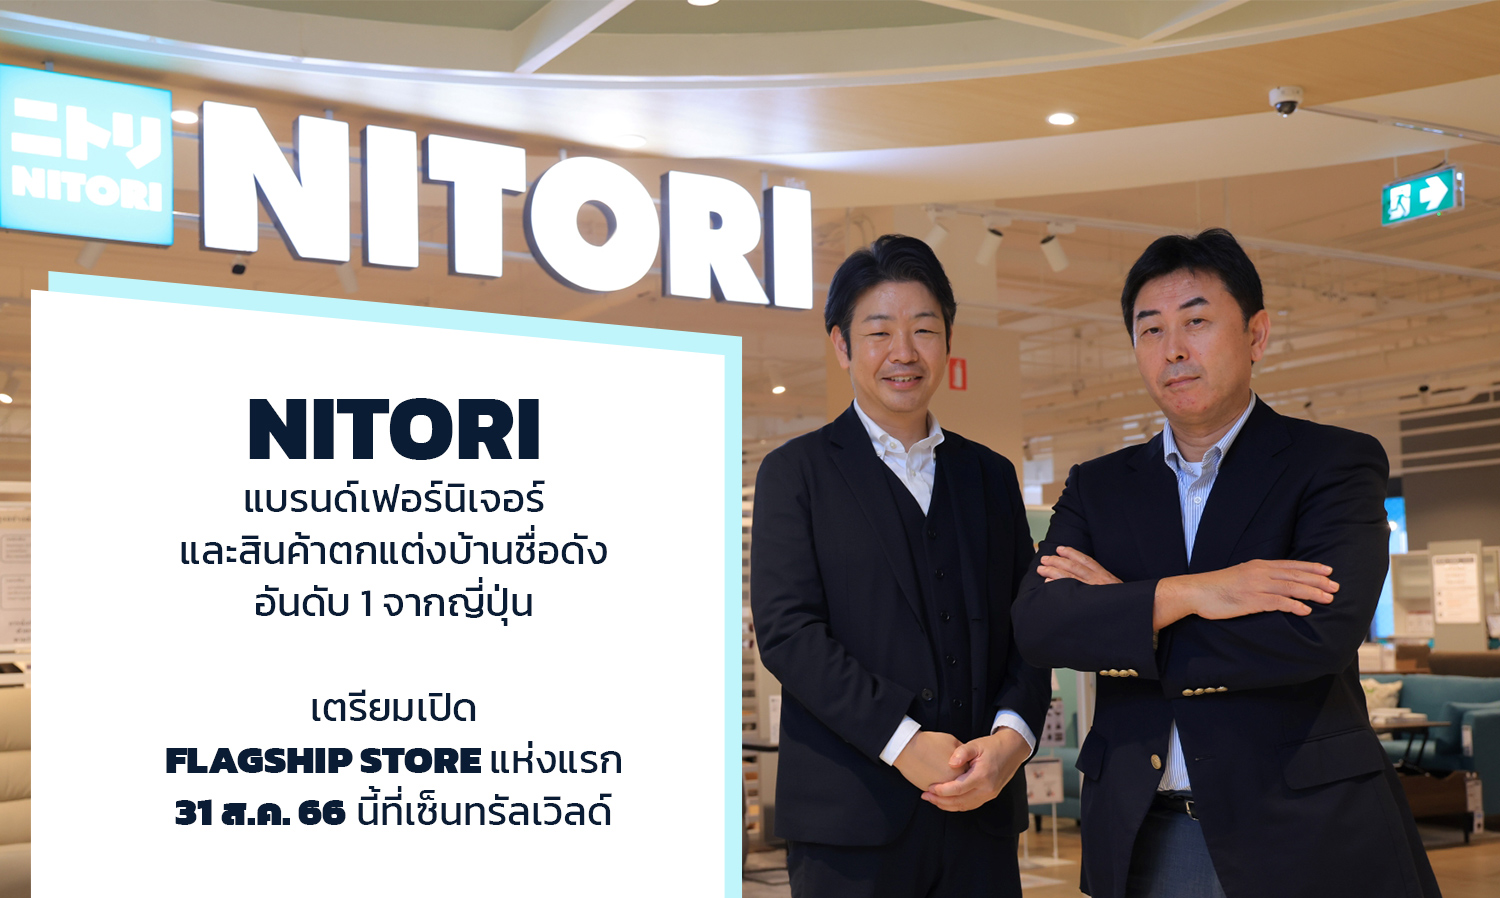 ‘NITORI’ แบรนด์เฟอร์นิเจอร์และสินค้าตกแต่งบ้านชื่อดัง อันดับ 1 จากญี่ปุ่น เตรียมเปิด Flagship Store แห่งแรก 31 ส.ค. 66 นี้ที่เซ็นทรัลเวิลด์ 